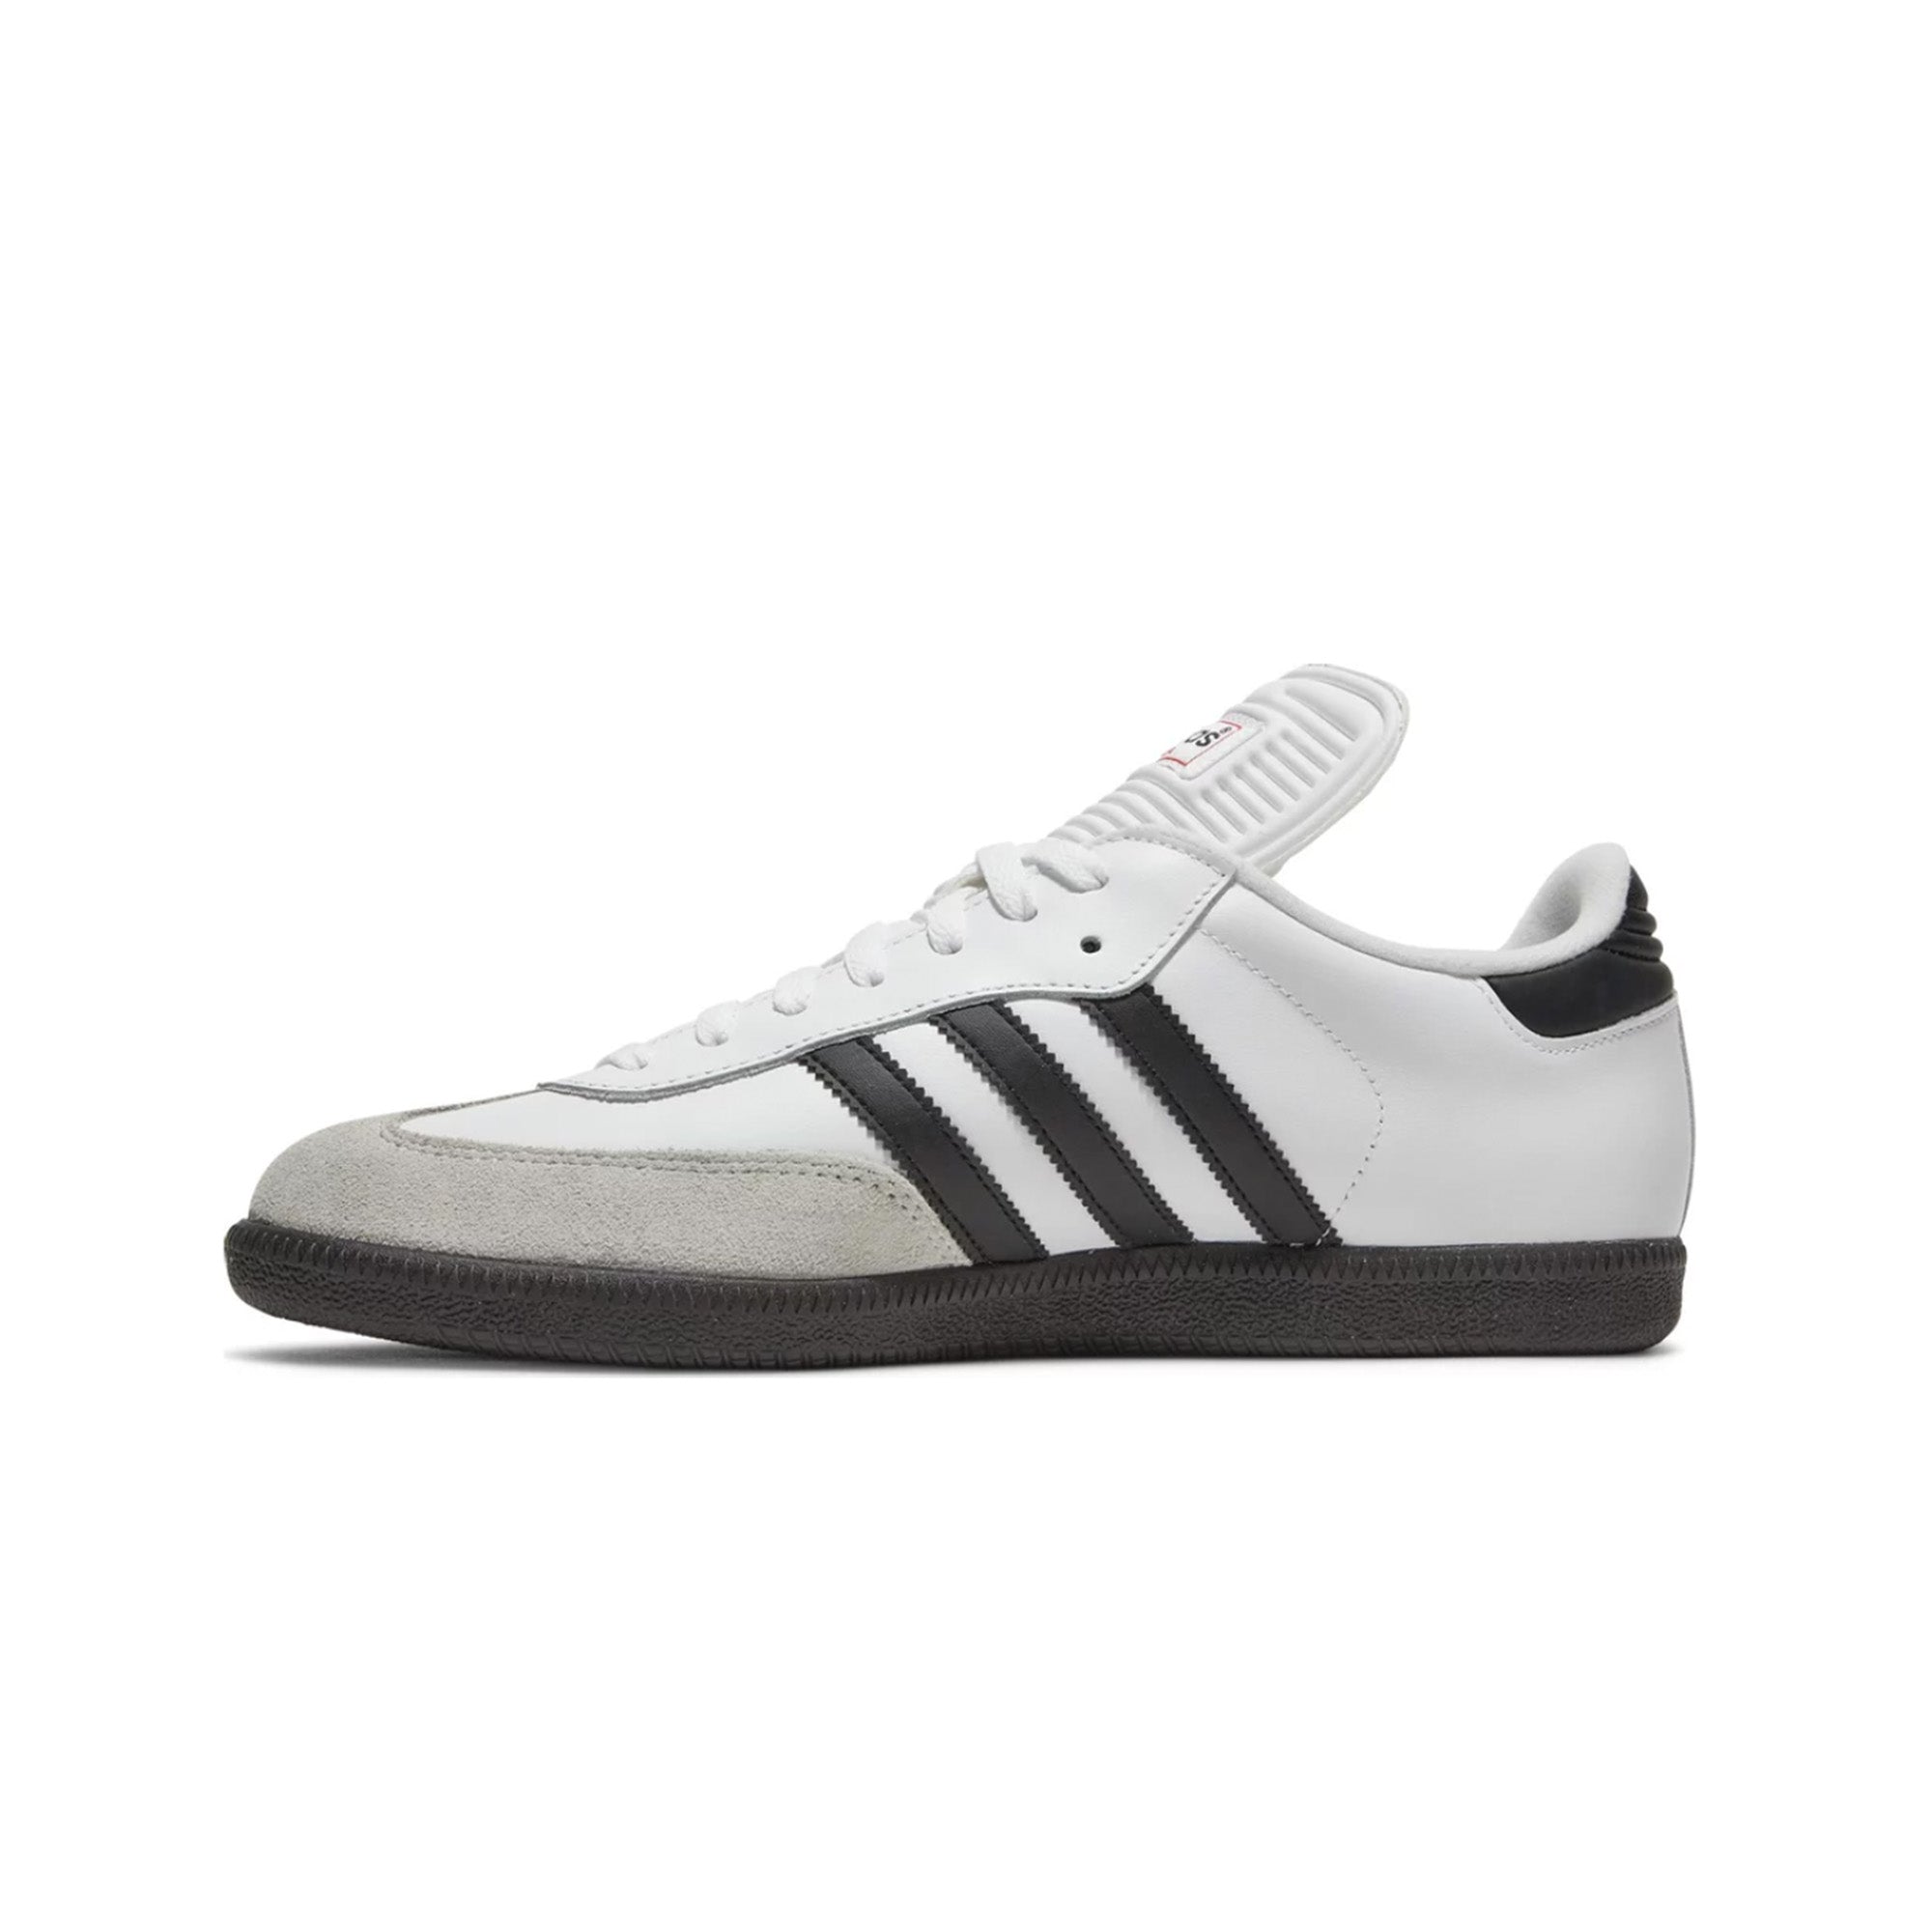 Adidas Samba - Classic White